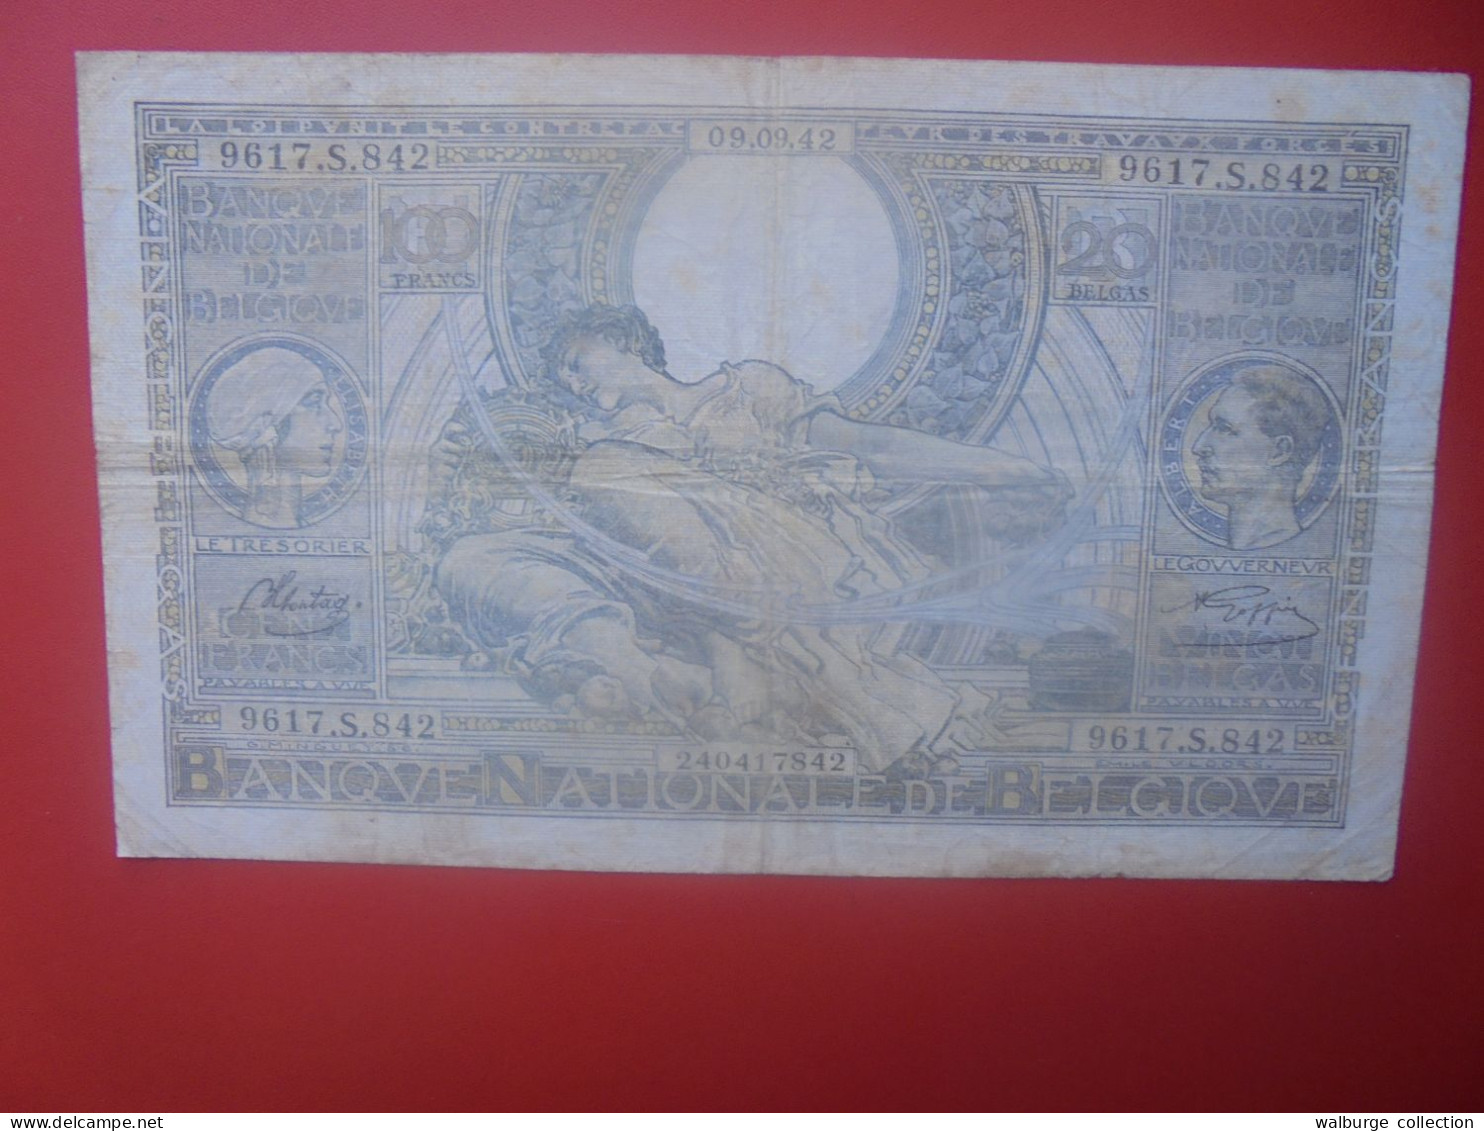 BELGIQUE 100 Francs 1942 Circuler COTES:5-10-25 EURO (B.33) - 100 Frank & 100 Frank-20 Belgas